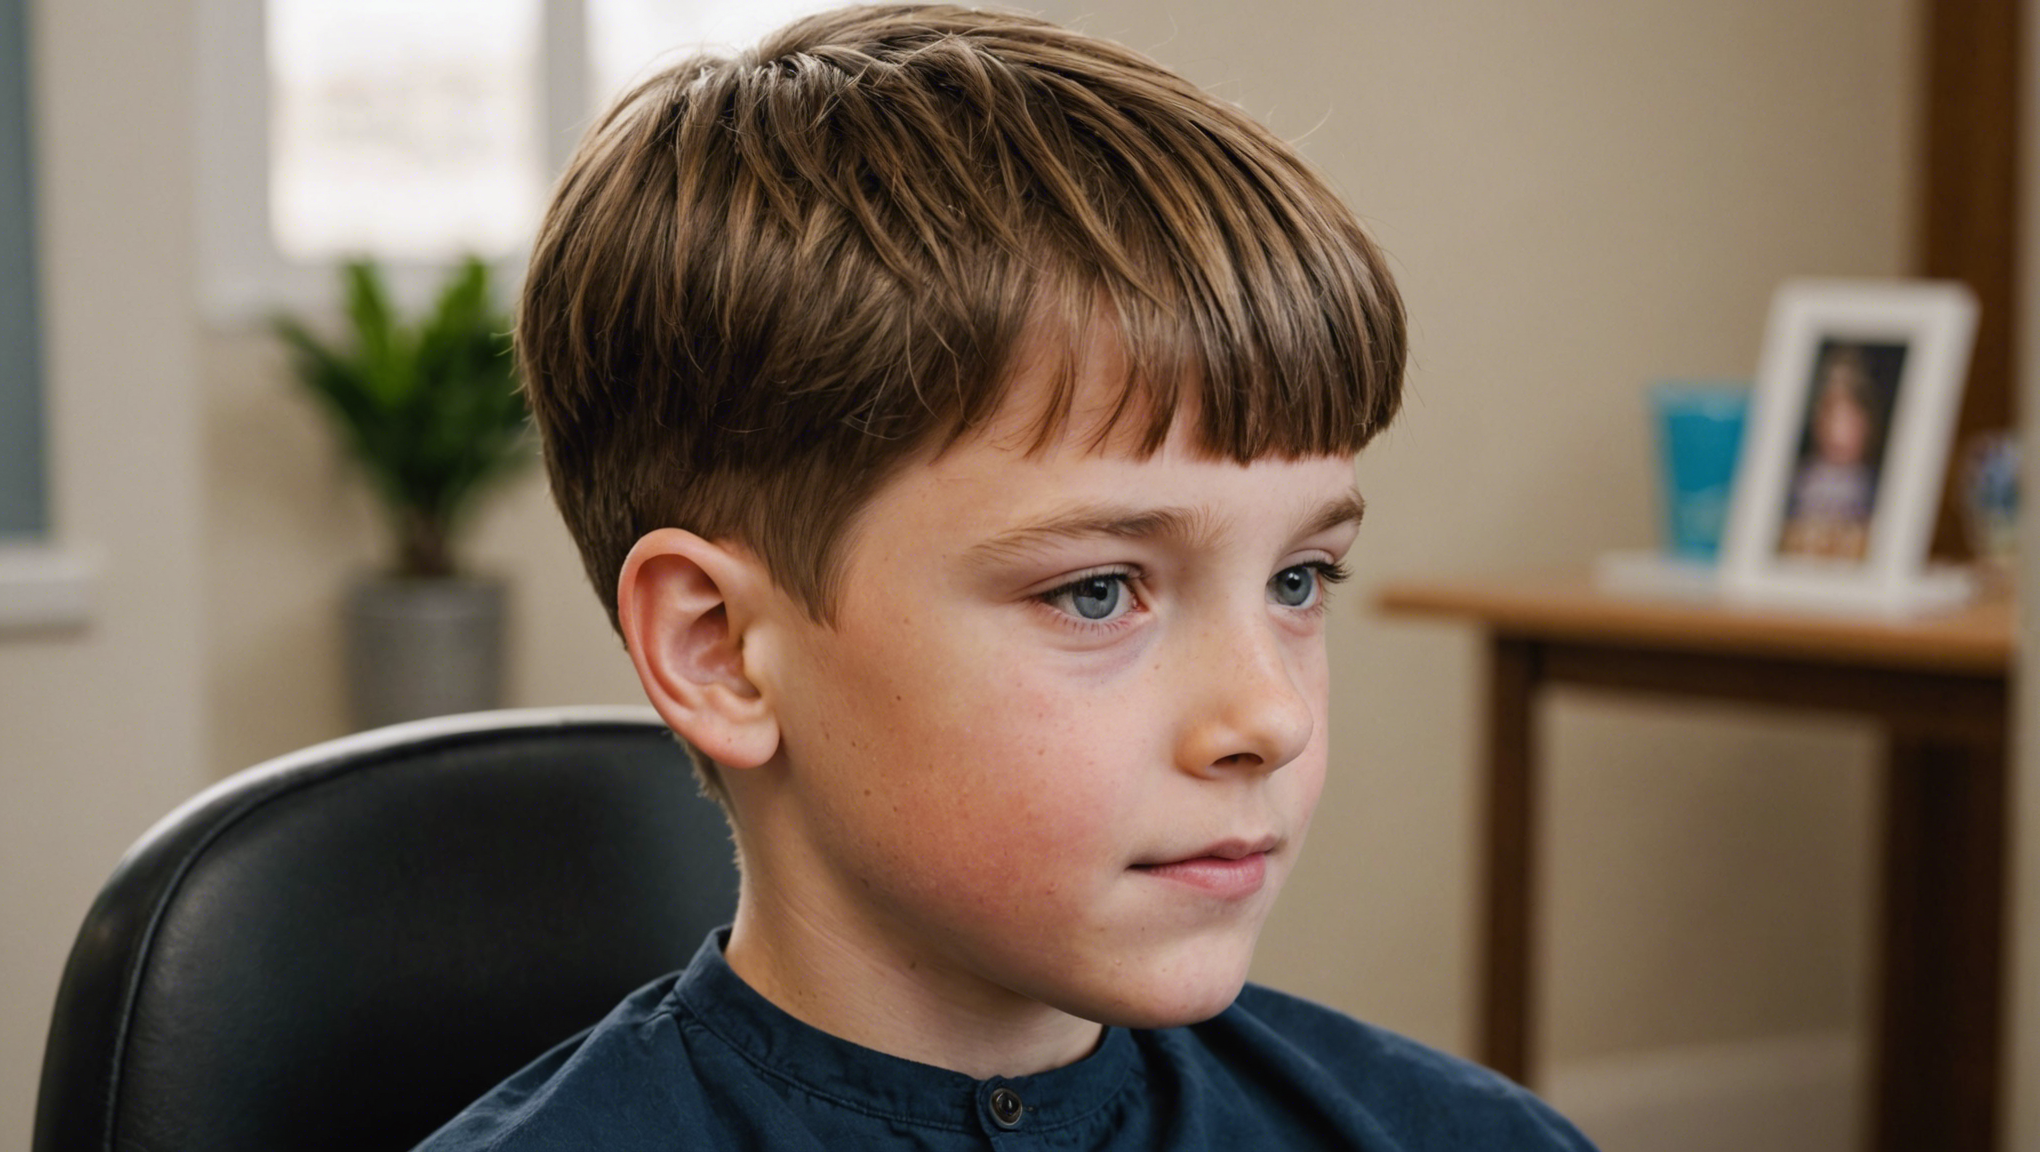 découvrez nos conseils pour choisir la meilleure coupe de cheveux pour un garçon de 10 ans. des idées de coiffure adaptées à son âge et à ses goûts.